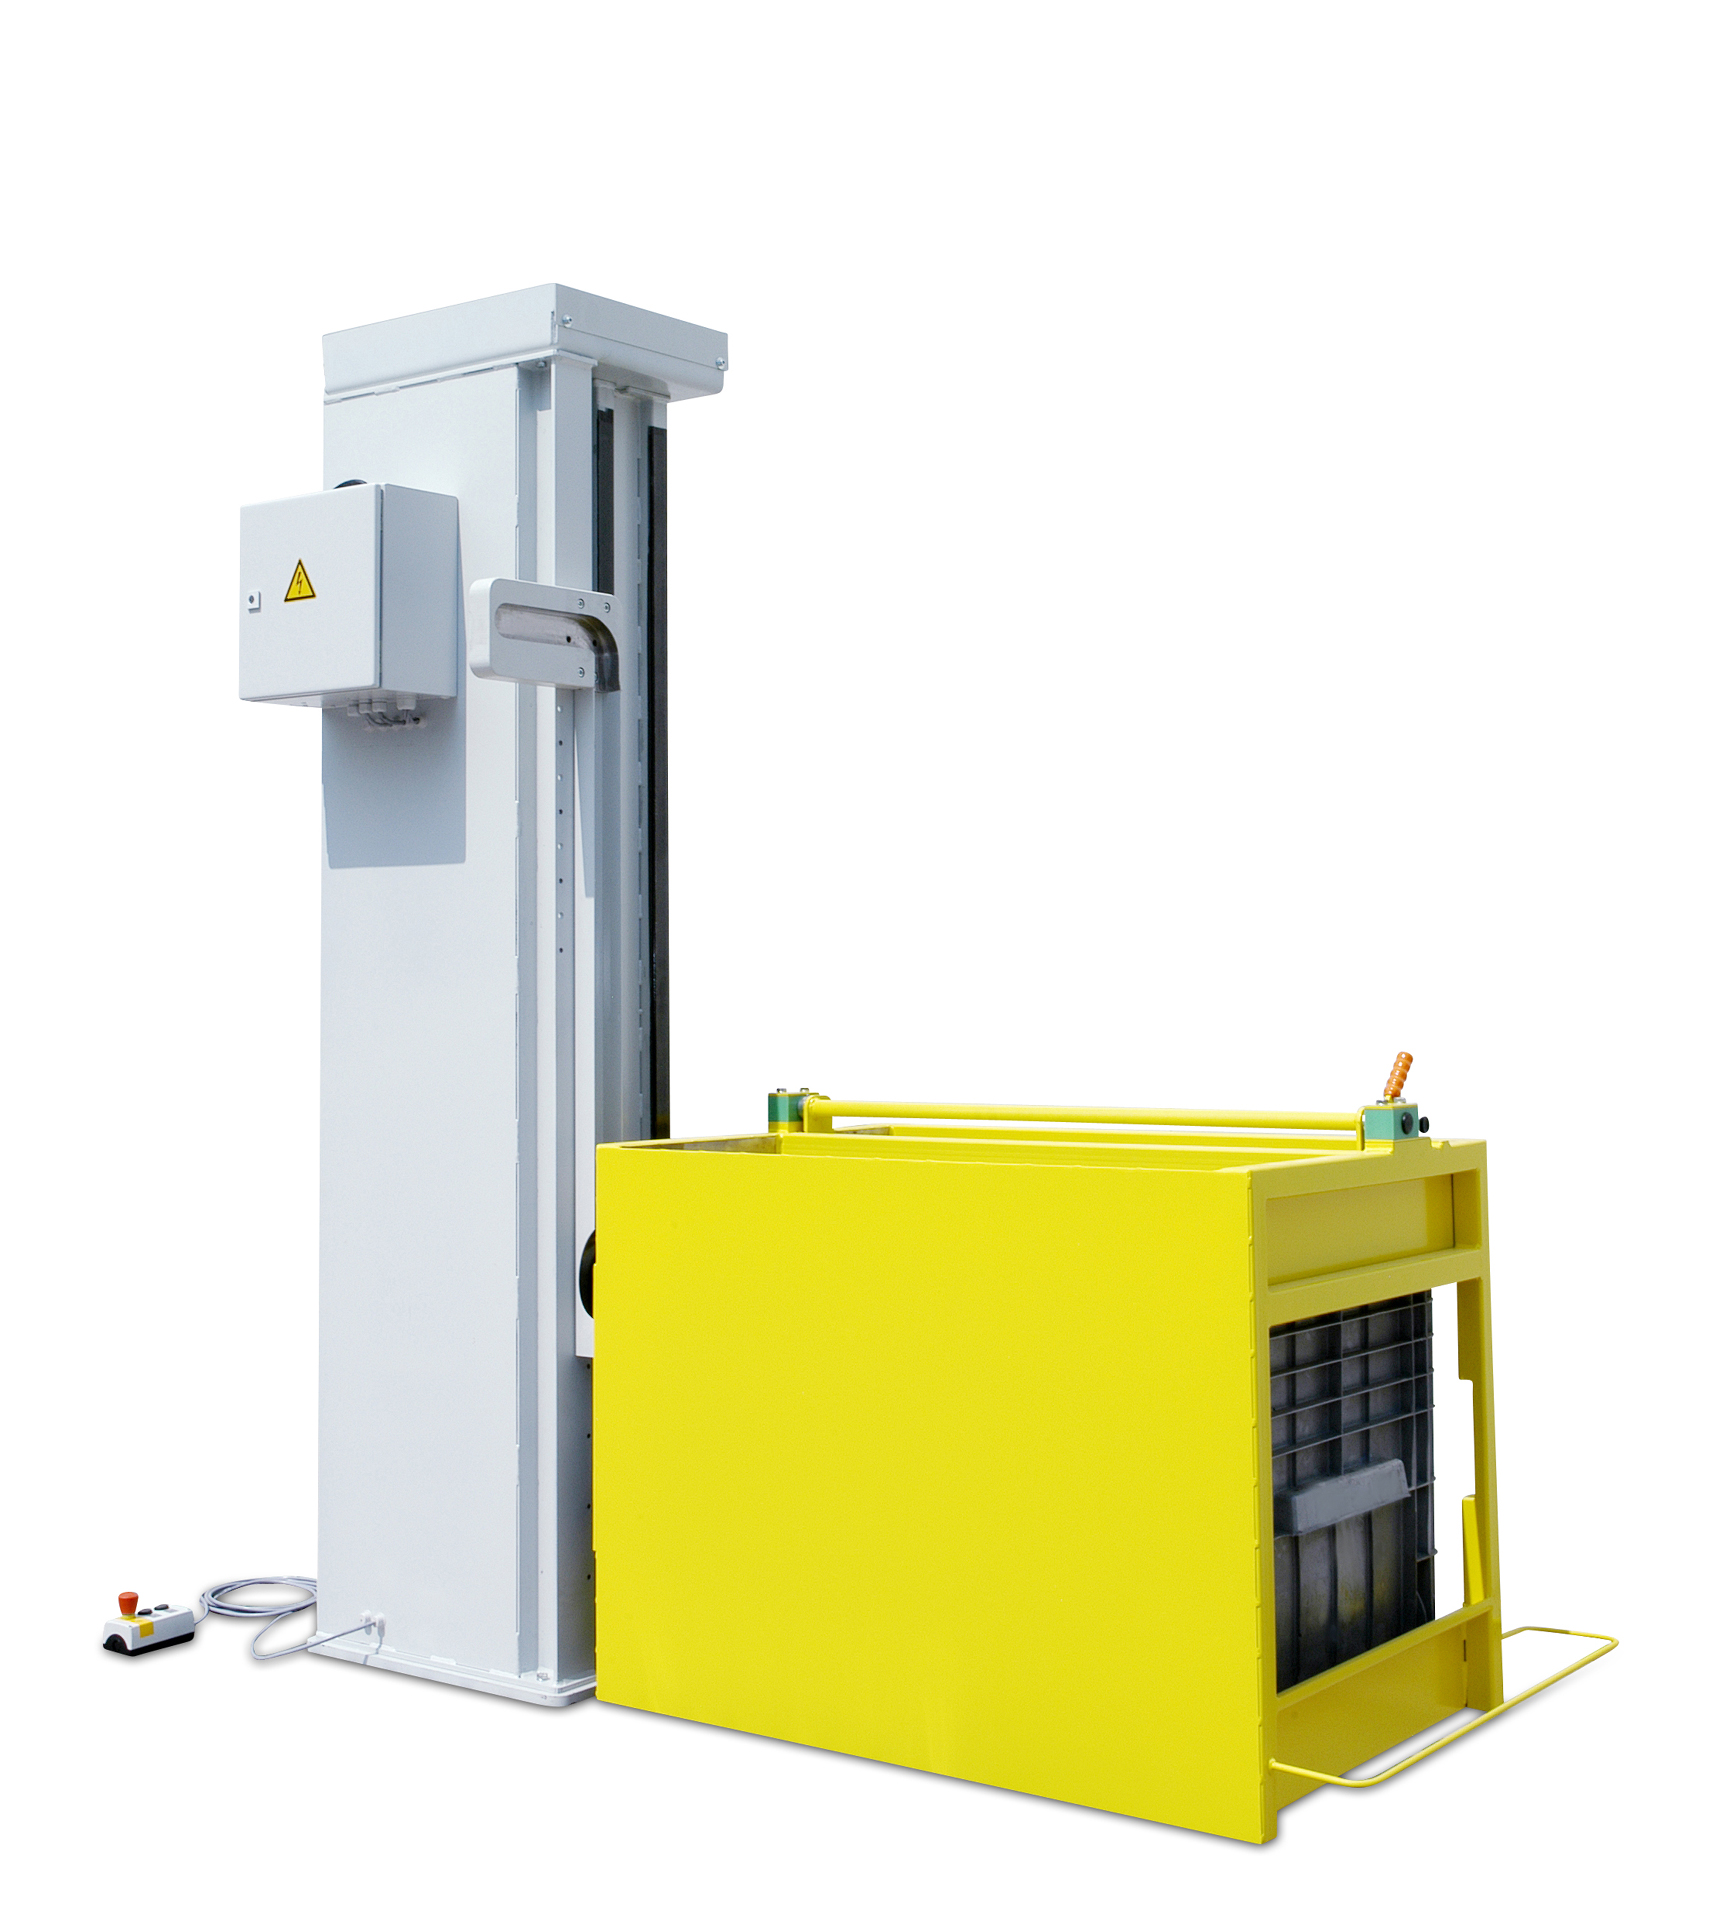 Die Hebe Kipp System Vorrichtung vom Hersteller Leiritz Maschinenbau ermöglicht eine sichere Zuführung von Schüttgut und Kleinteilen im Produktionsablauf.